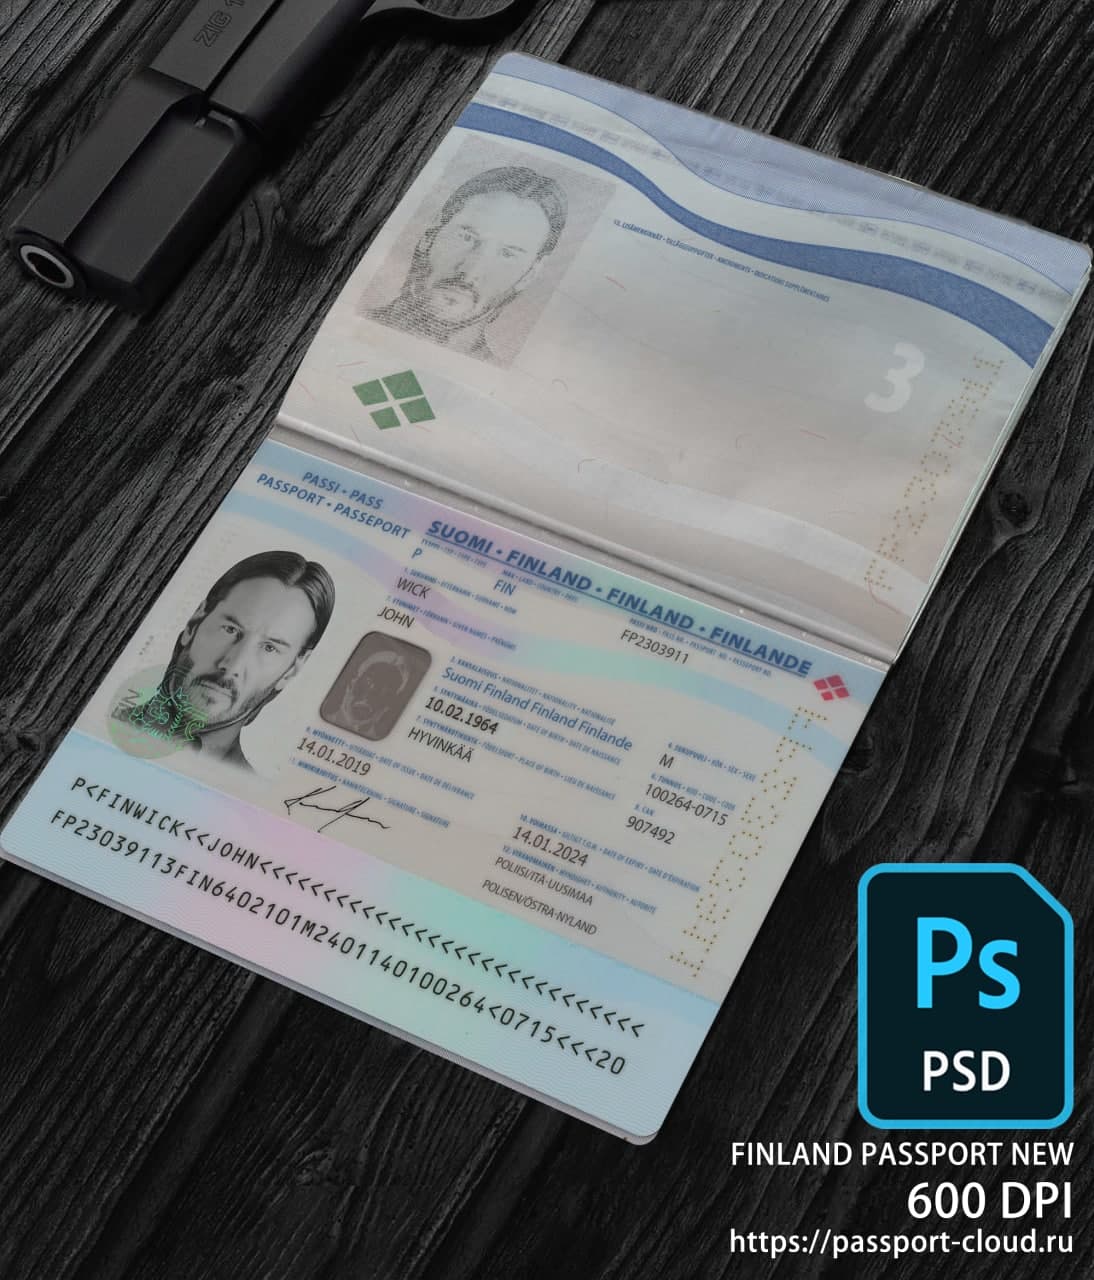 Finland Passport 2017+ PSD1